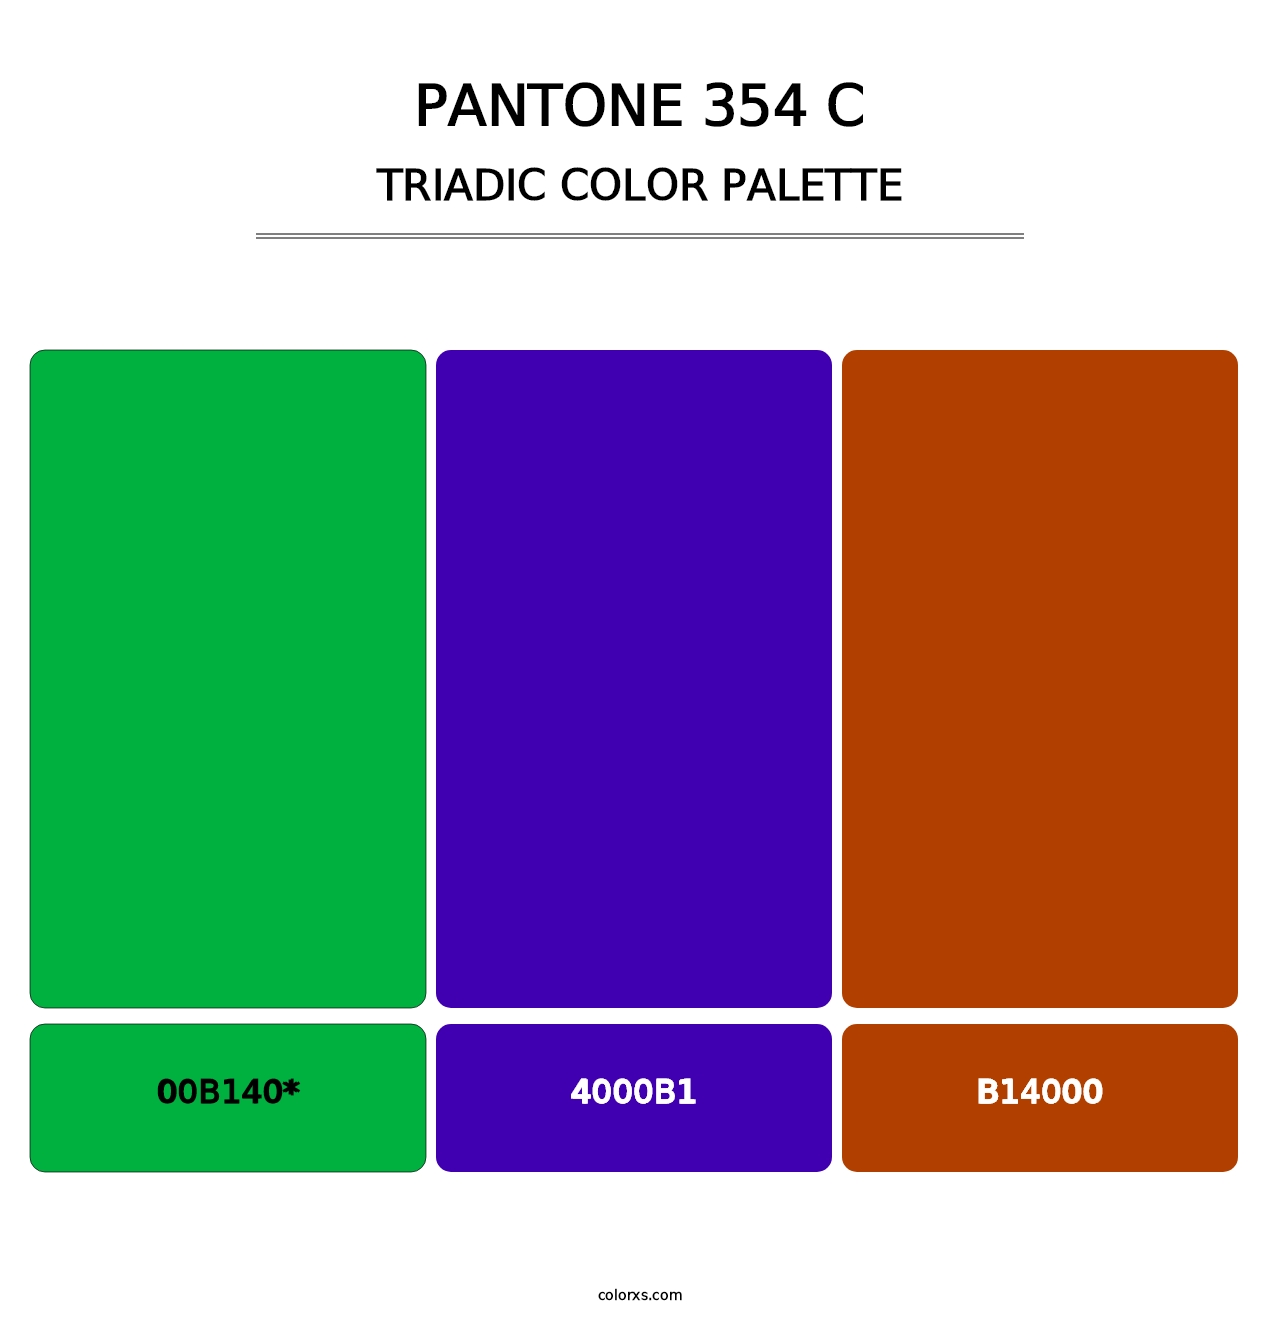 PANTONE 354 C - Triadic Color Palette